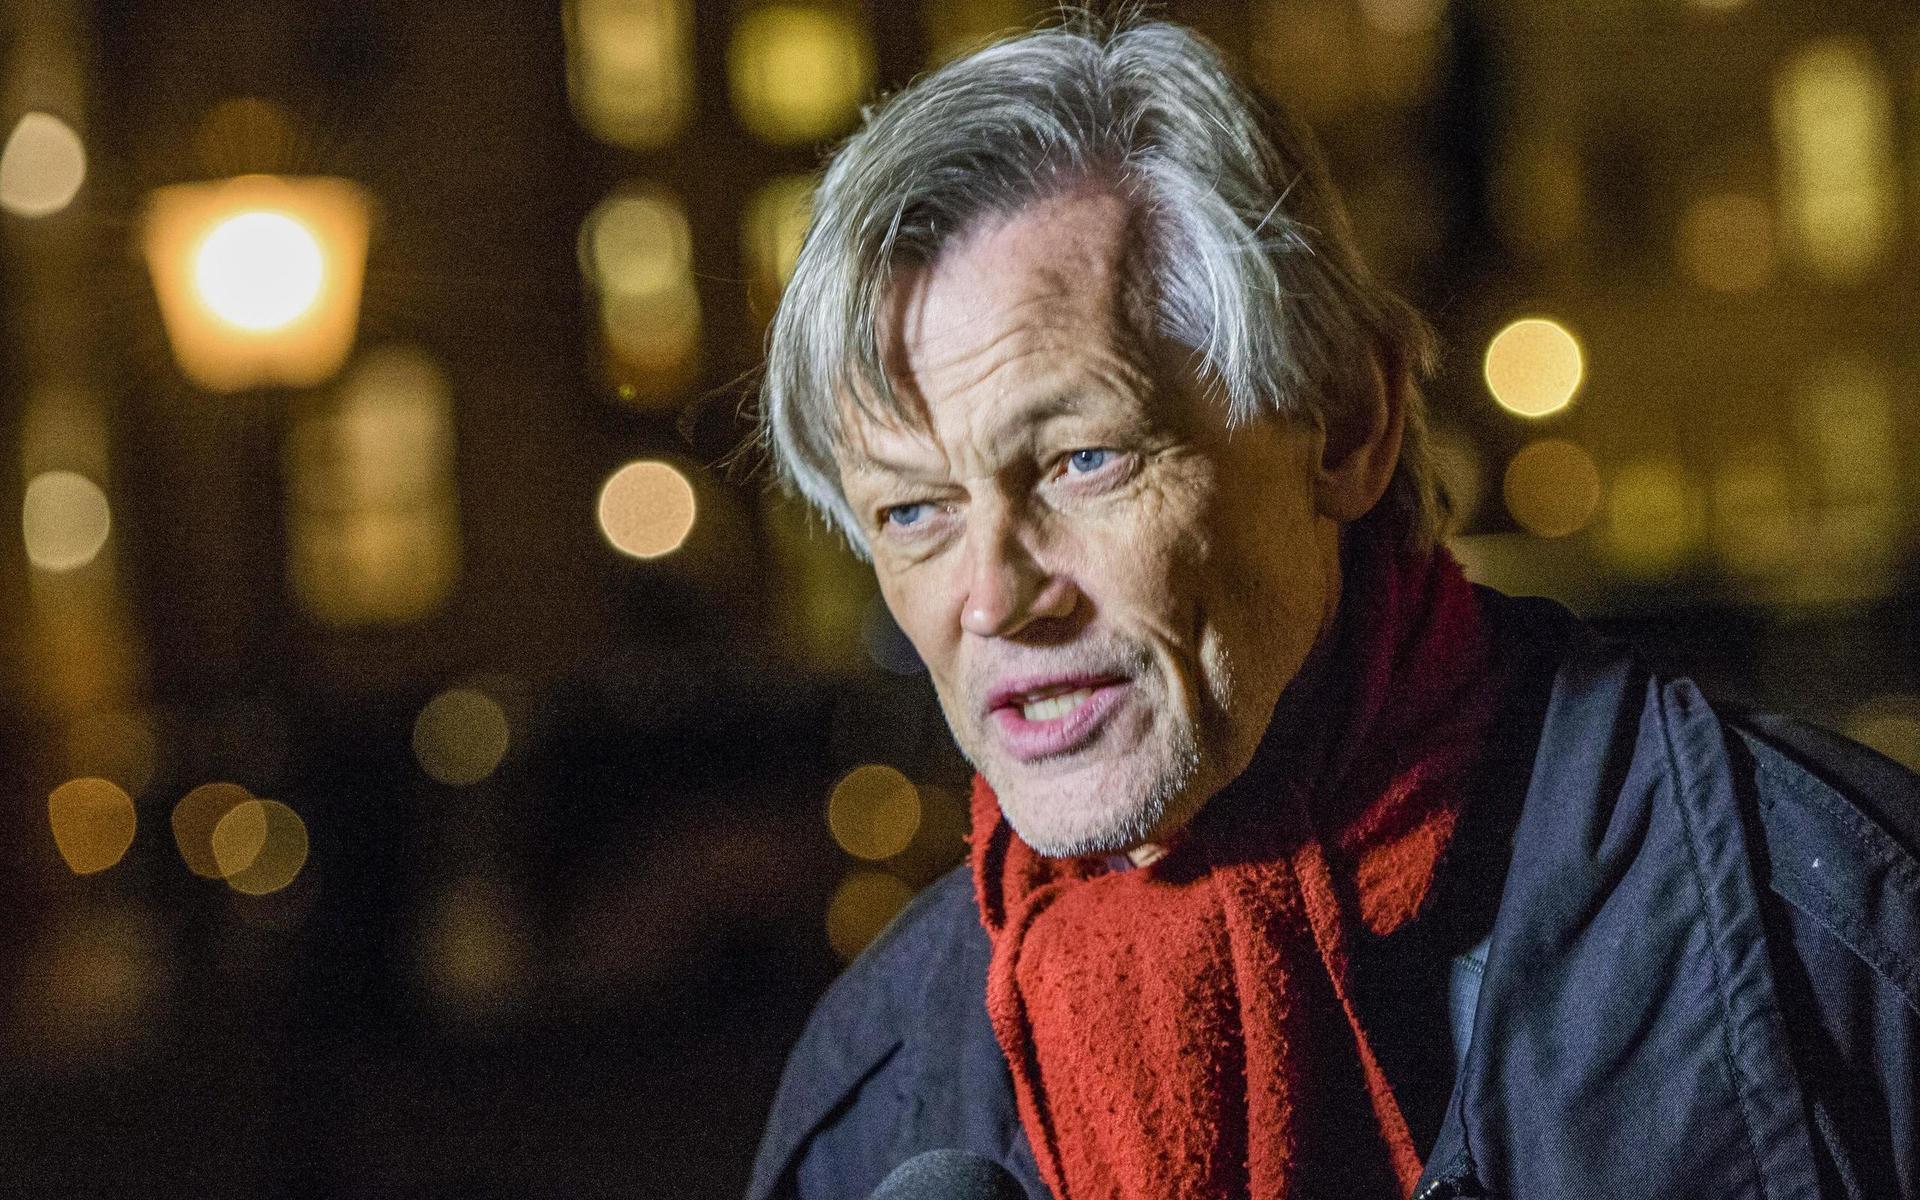 För några veckor sedan valde SVT och Expressen att sända en presskonferens från toppadvokaten Göran Lambertz trädgård efter att han släpptes fri sedan han häktats misstänkt för våldtäkt. Valet att sända presskonferensen kritiserades kraftigt.